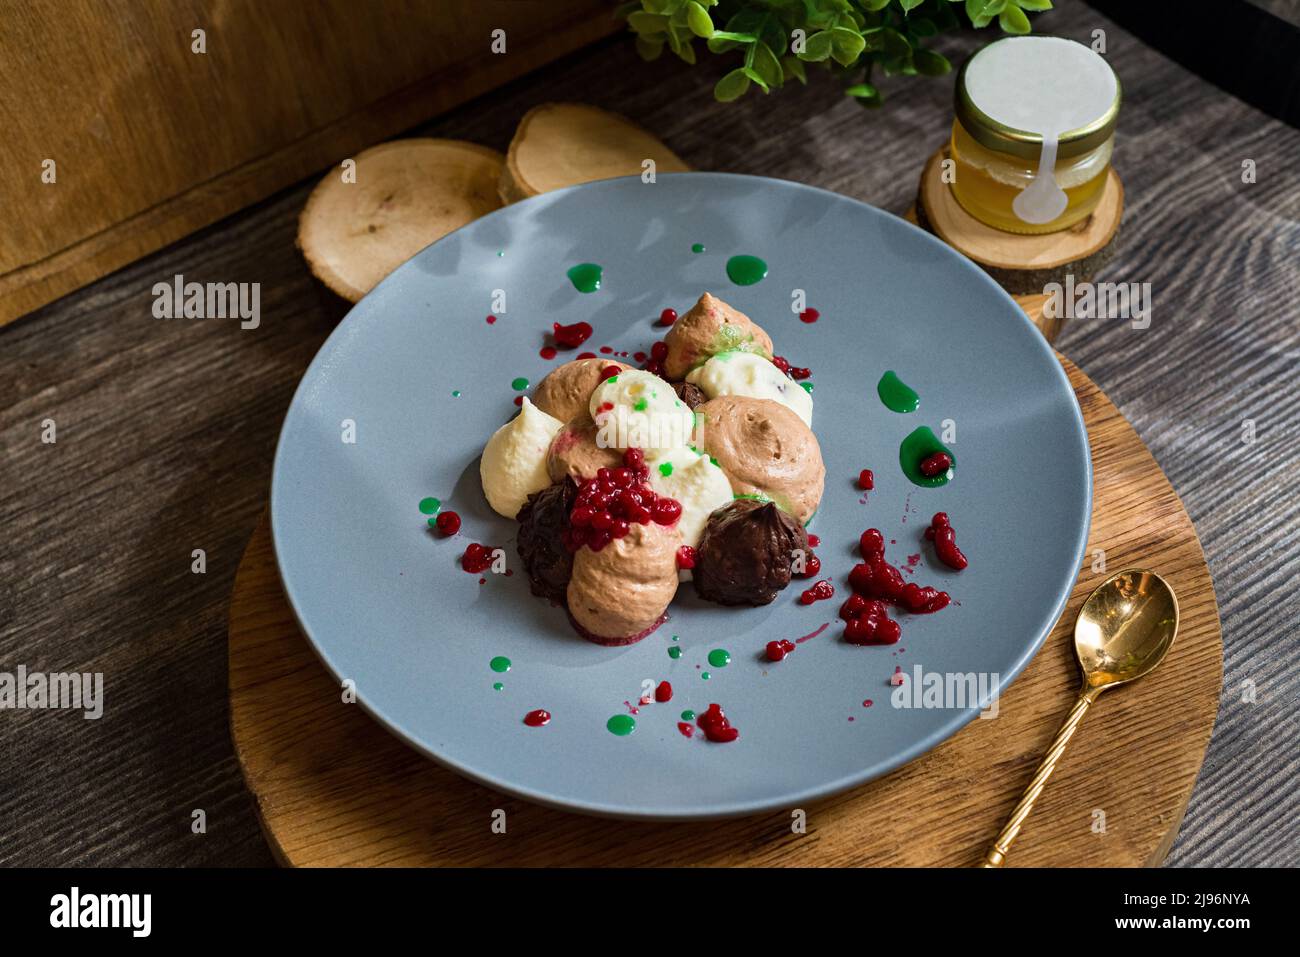 Tre mousse al cioccolato con caviale al lampone. Dessert su un piatto. Foto dark moody food. Foto Stock